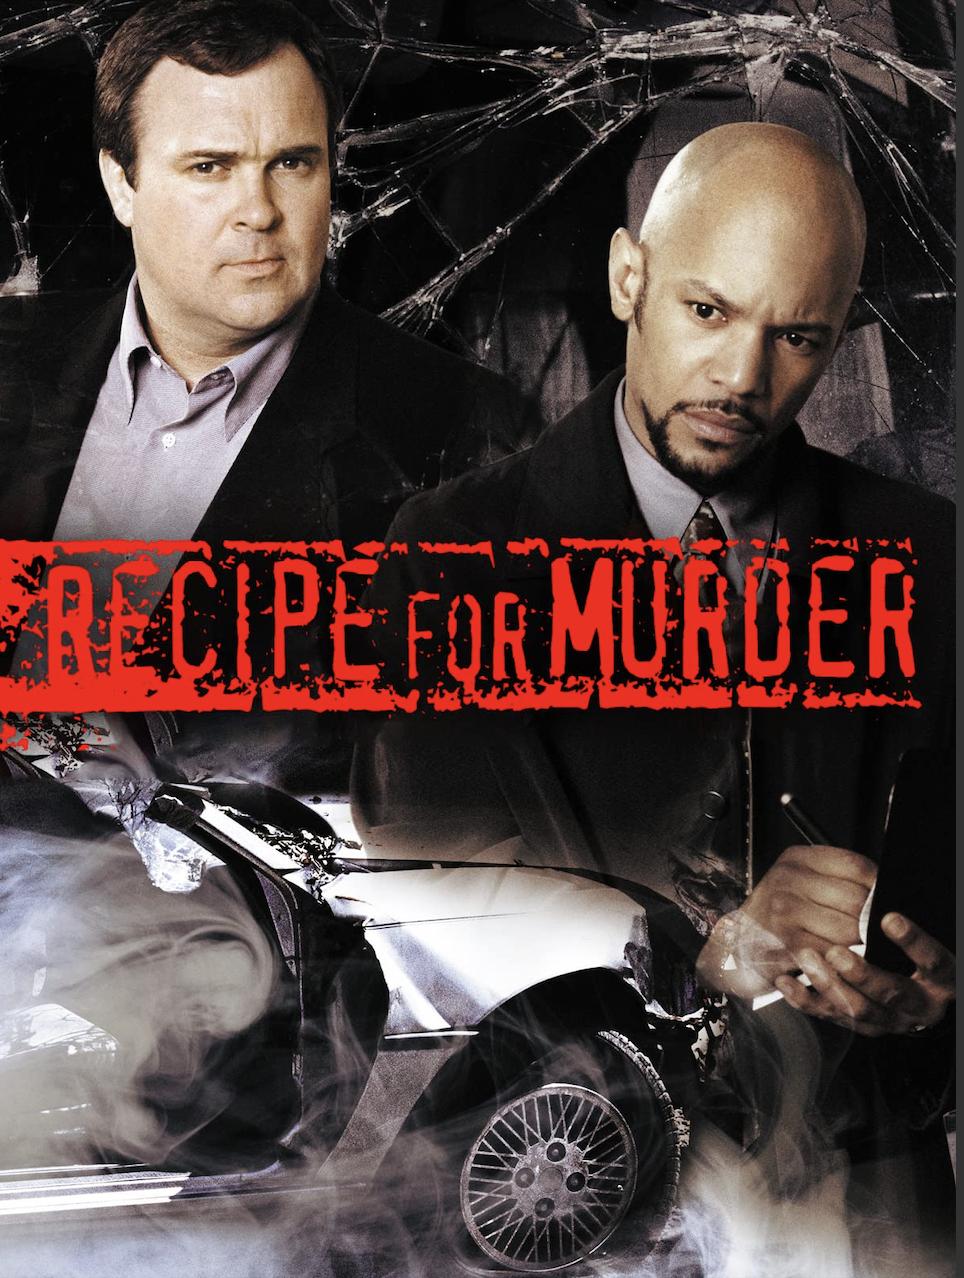 Recipe for Murder (2002) Screenshot 1